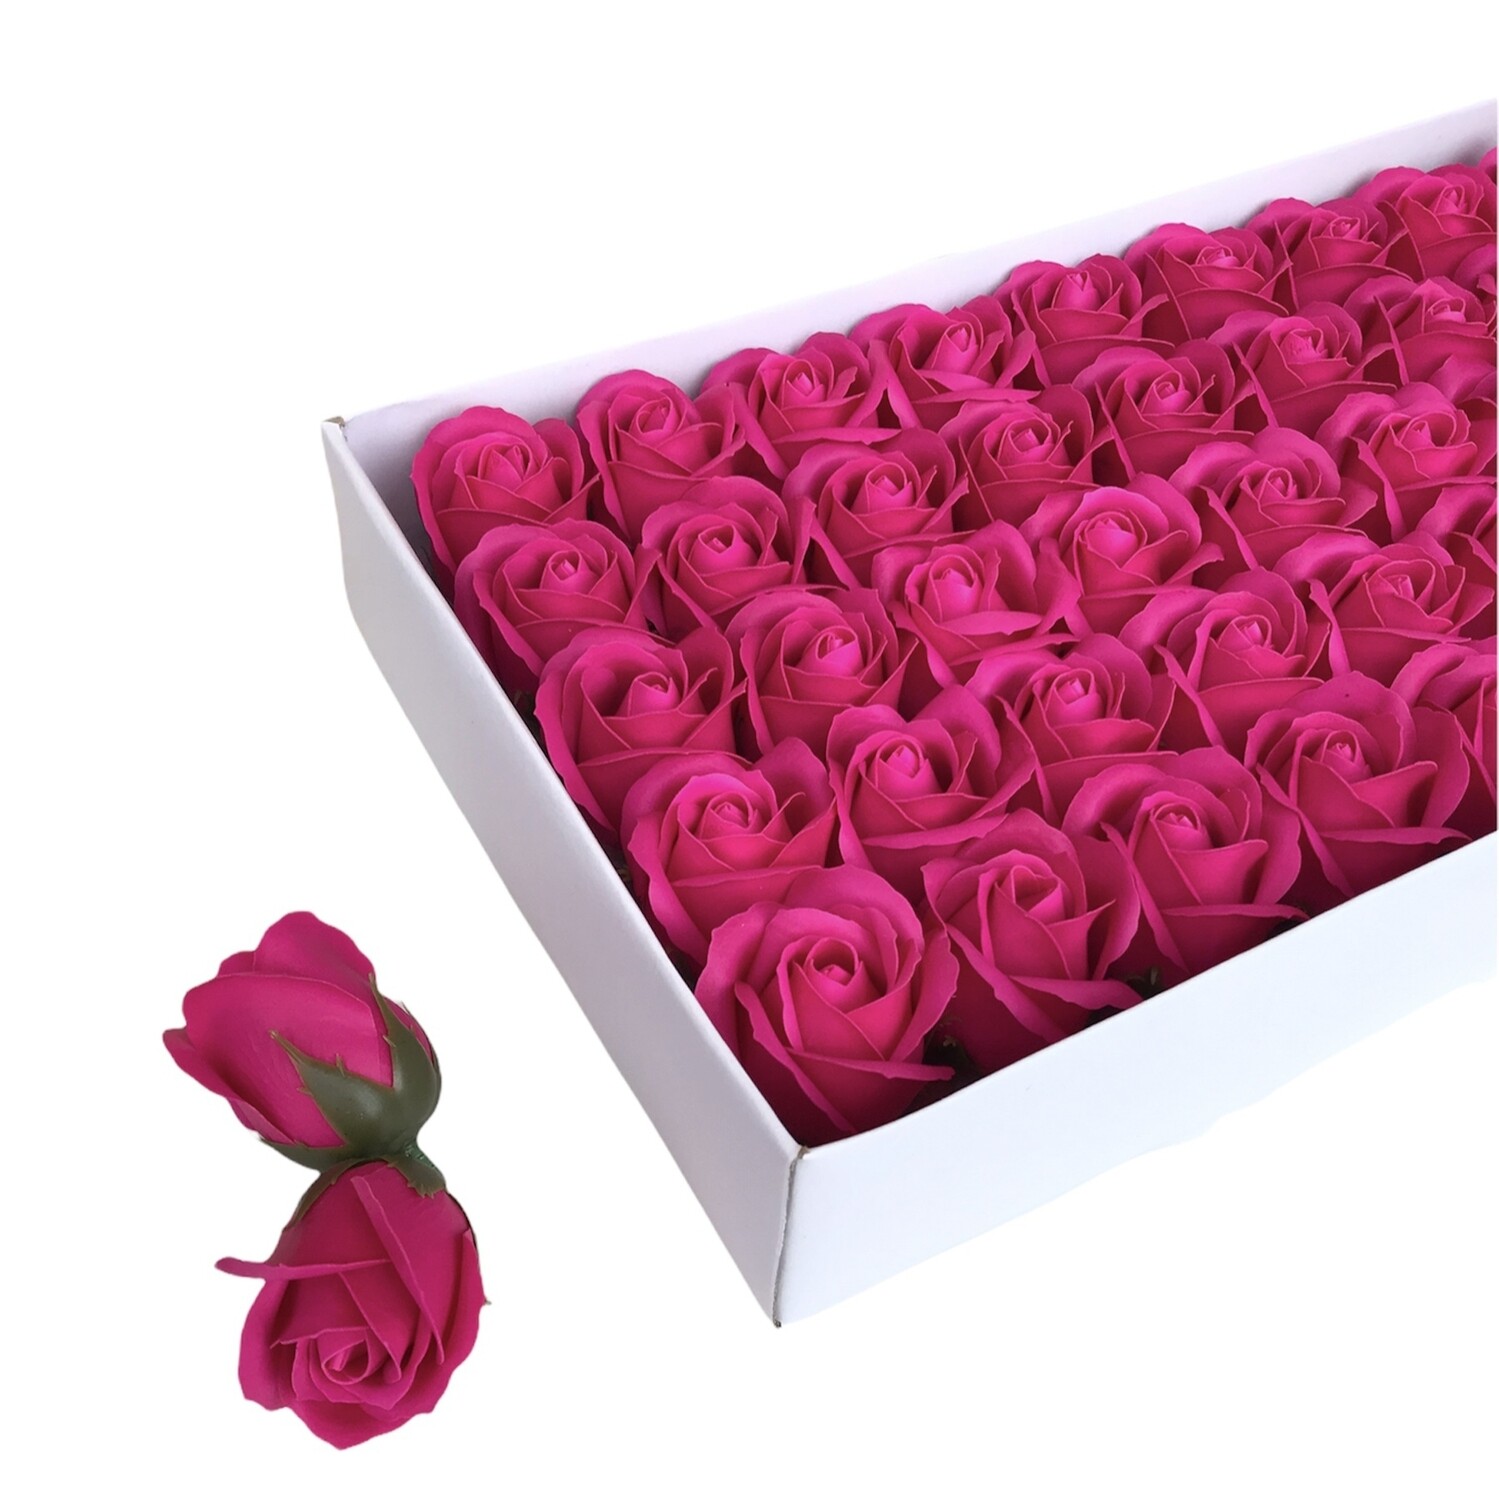 Мыльные розы, цвет - ФУКСИЯ, размер 5х5 см, в упаковке 50 шт